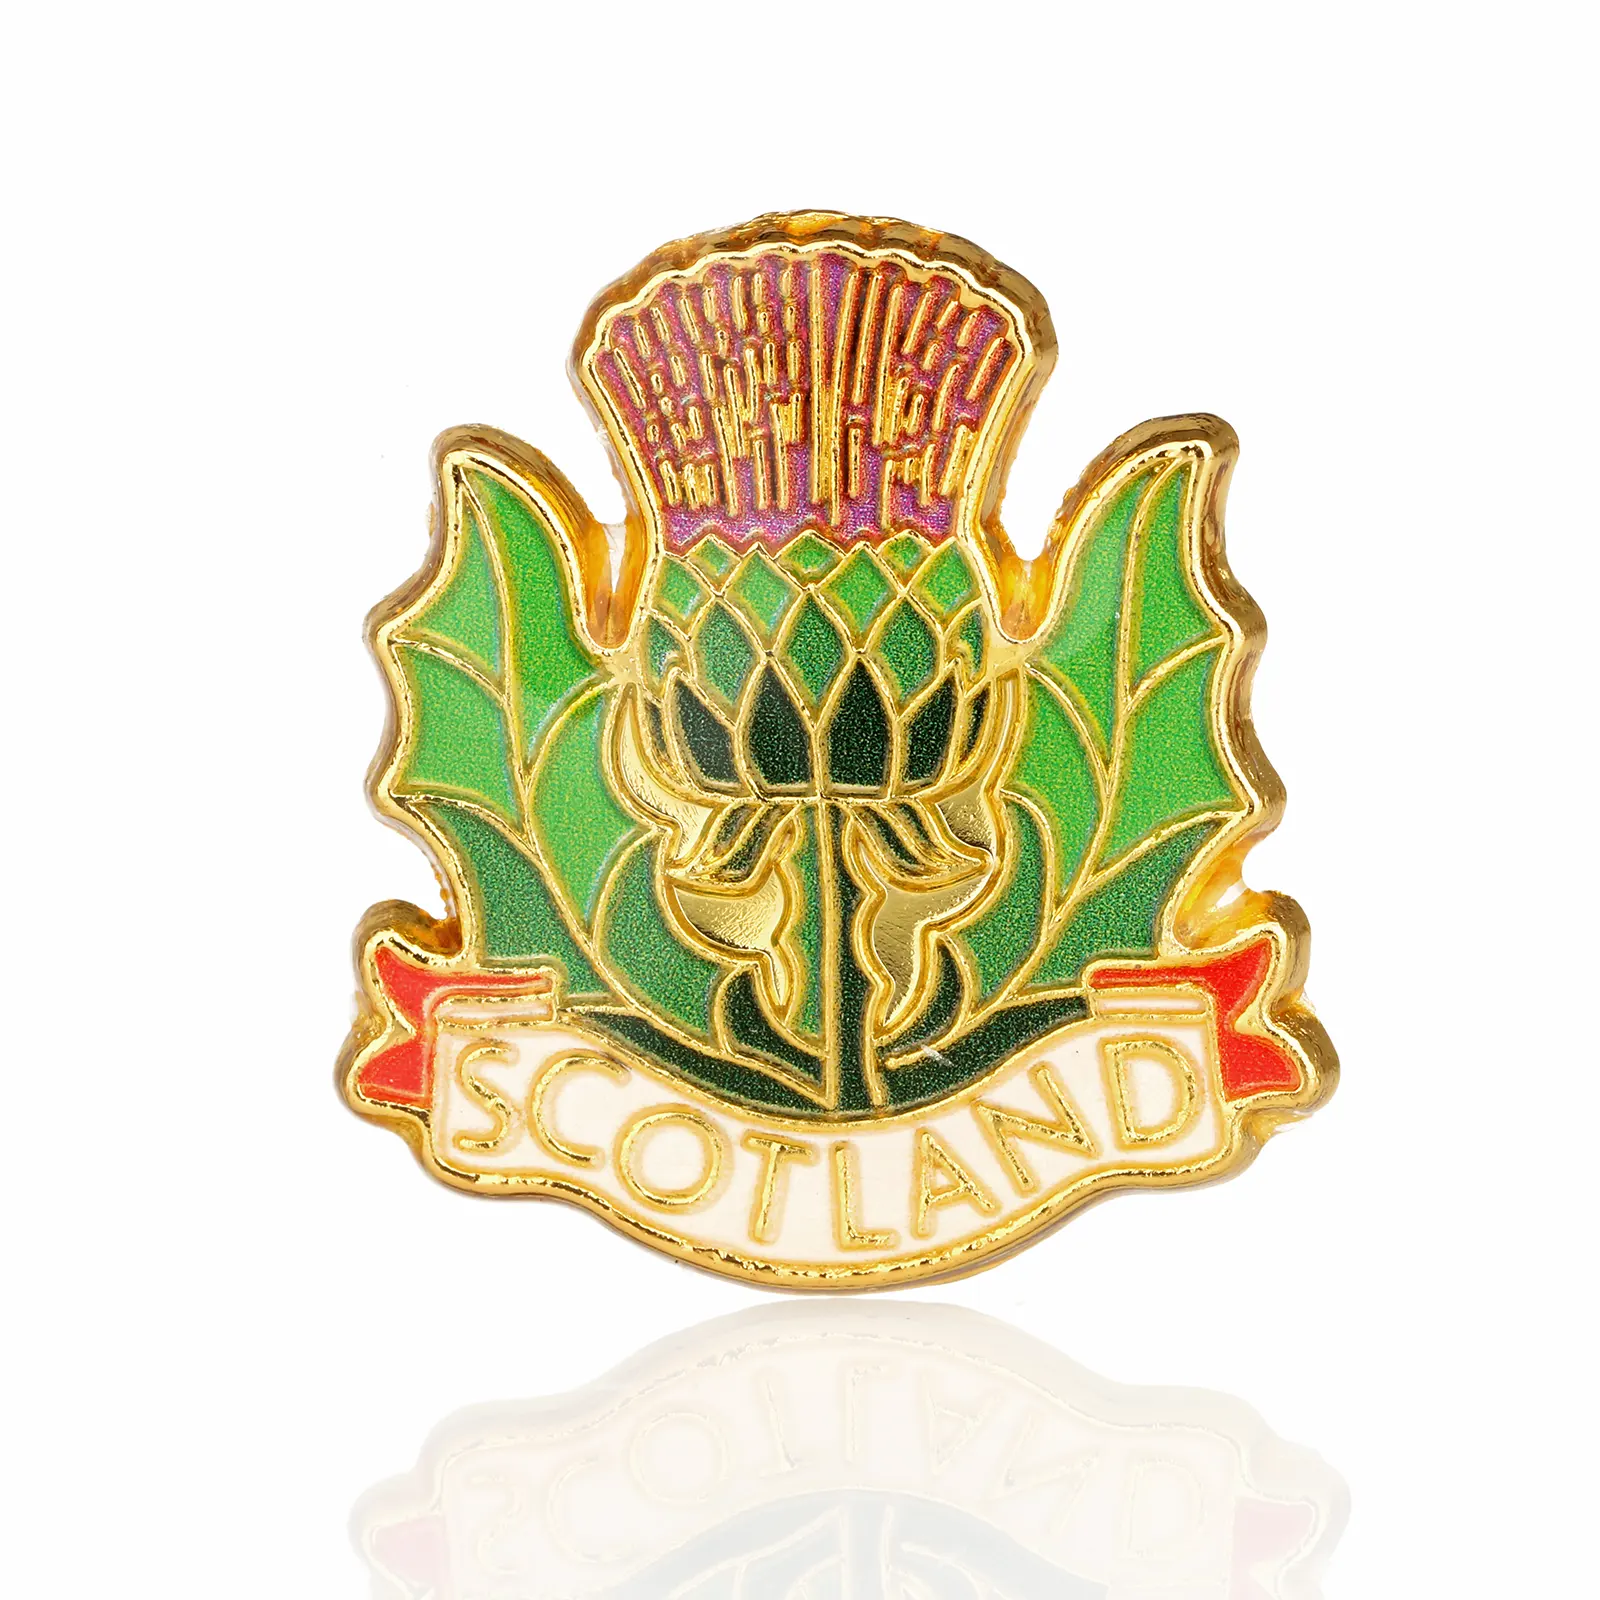 Scottish Thistle Pin Badge - Anstecknadel aus Schottland - Metall & Emaille